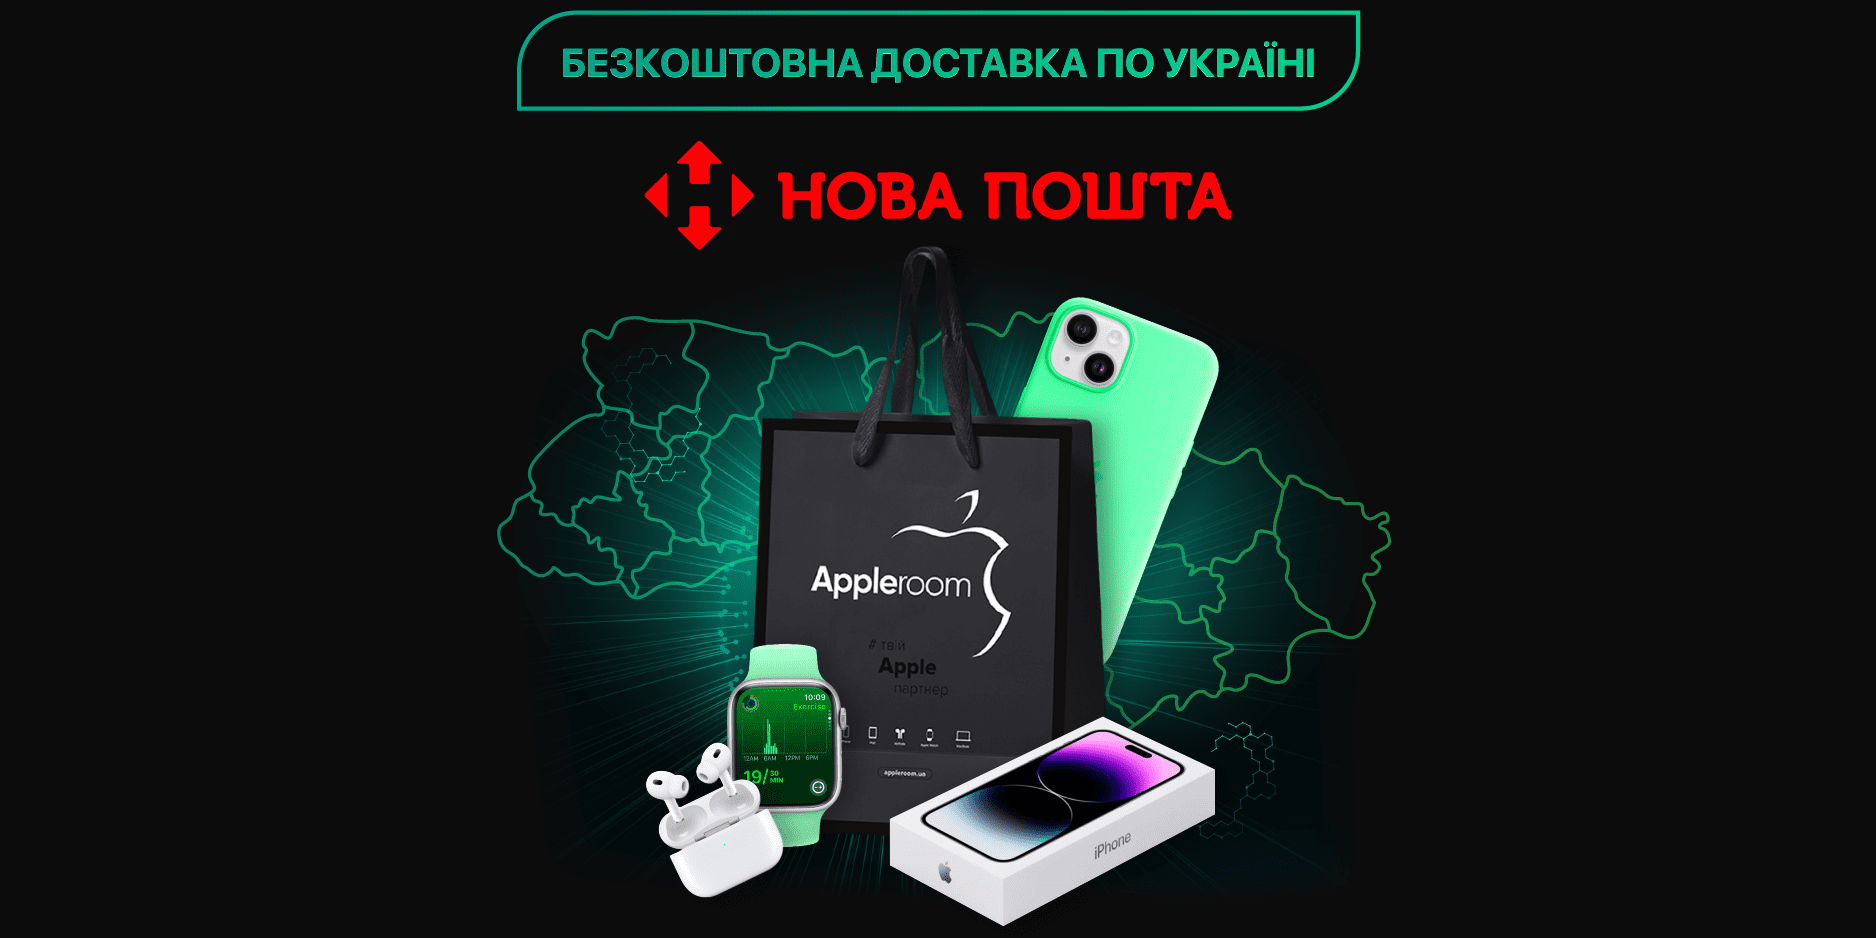 Бесплатная доставка по Украине от Appleroom и Новой почты